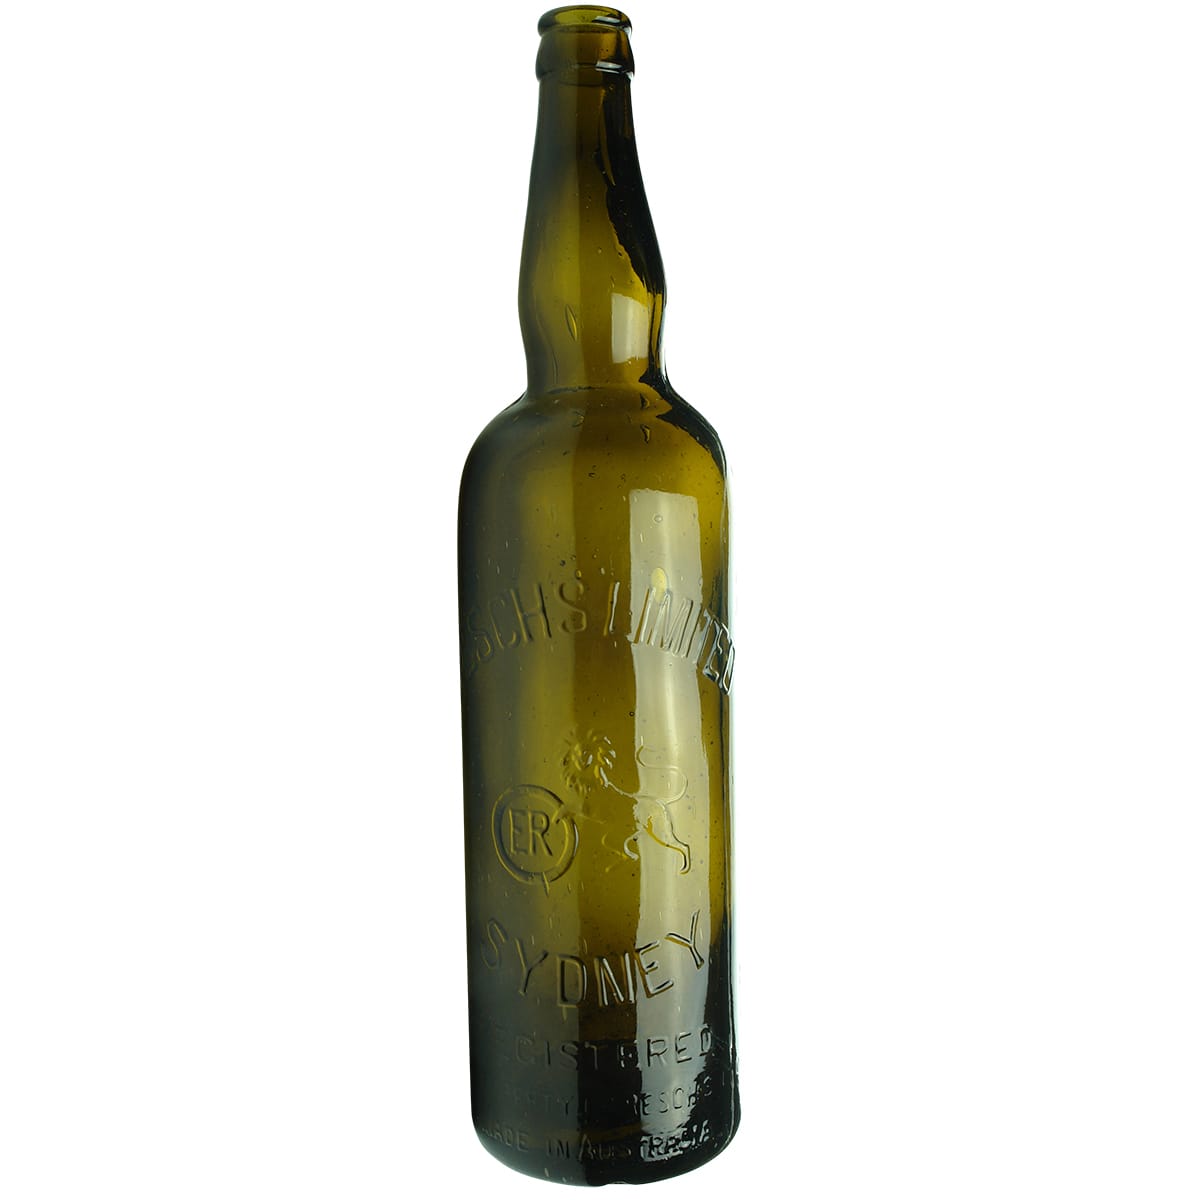 Beer. Resch's Sydney. Crown Seal. Shouldered. Green.